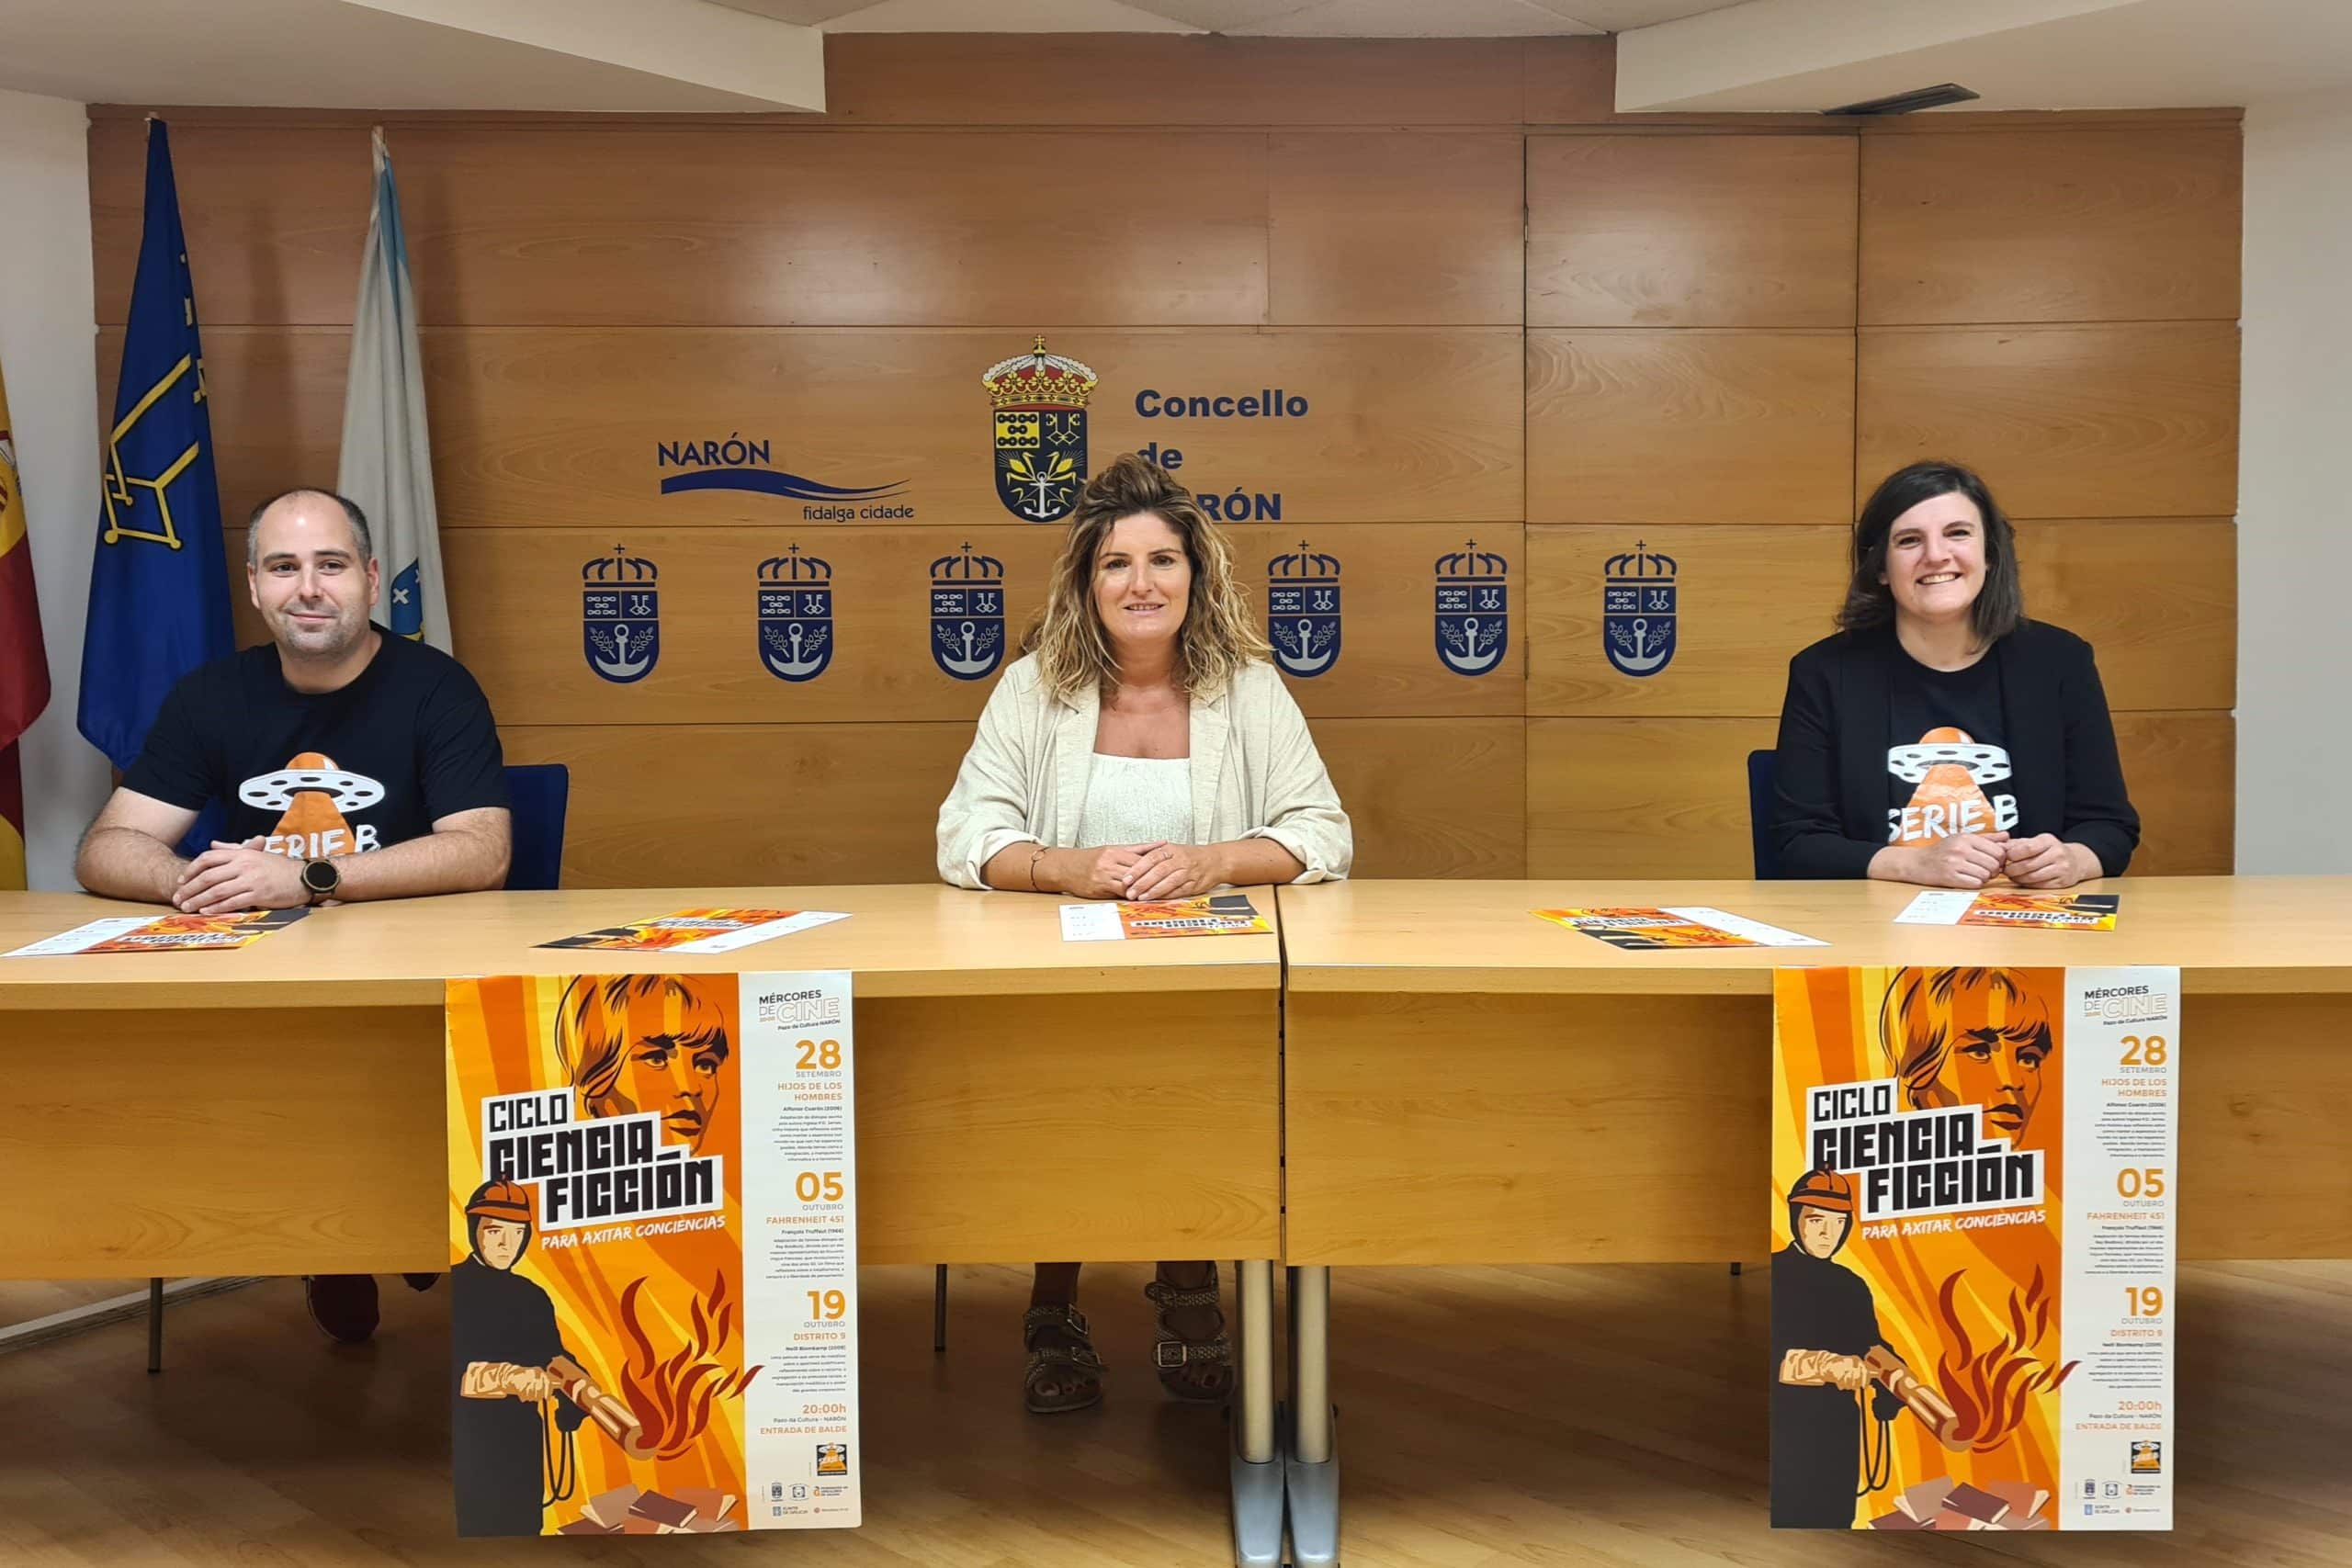 La alcadesa, Marián Ferreiro, presentó la iniciativa con Alberto Pena y Anabel Valera, integrantes del Cineclube Serie B